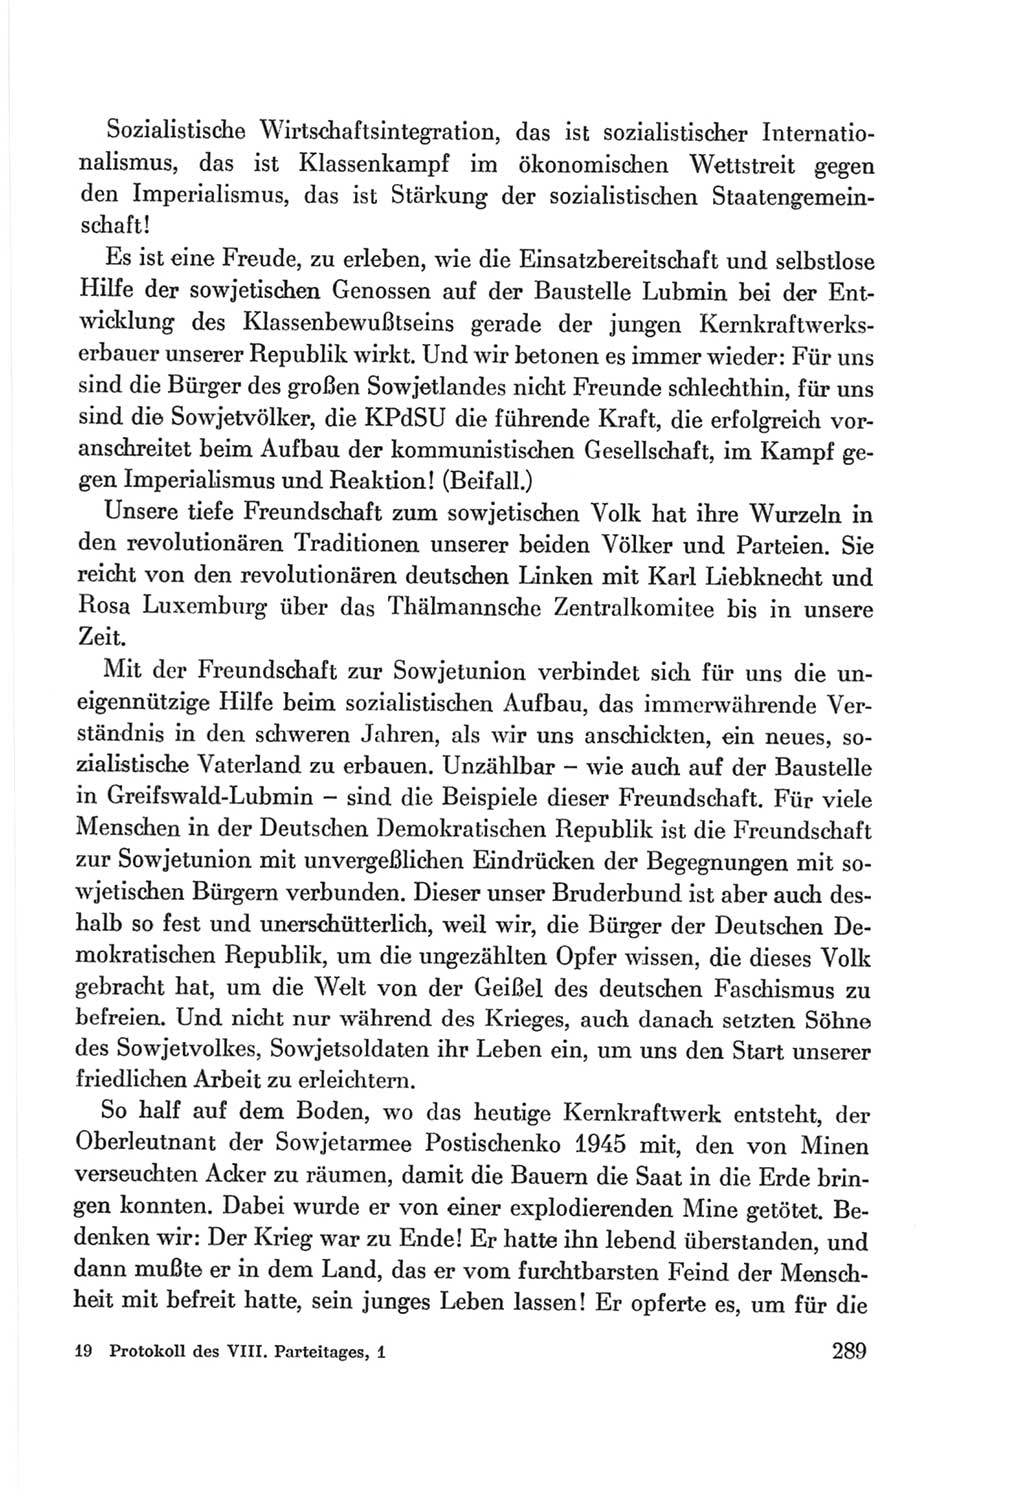 Protokoll der Verhandlungen des Ⅷ. Parteitages der Sozialistischen Einheitspartei Deutschlands (SED) [Deutsche Demokratische Republik (DDR)] 1971, Band 1, Seite 289 (Prot. Verh. Ⅷ. PT SED DDR 1971, Bd. 1, S. 289)